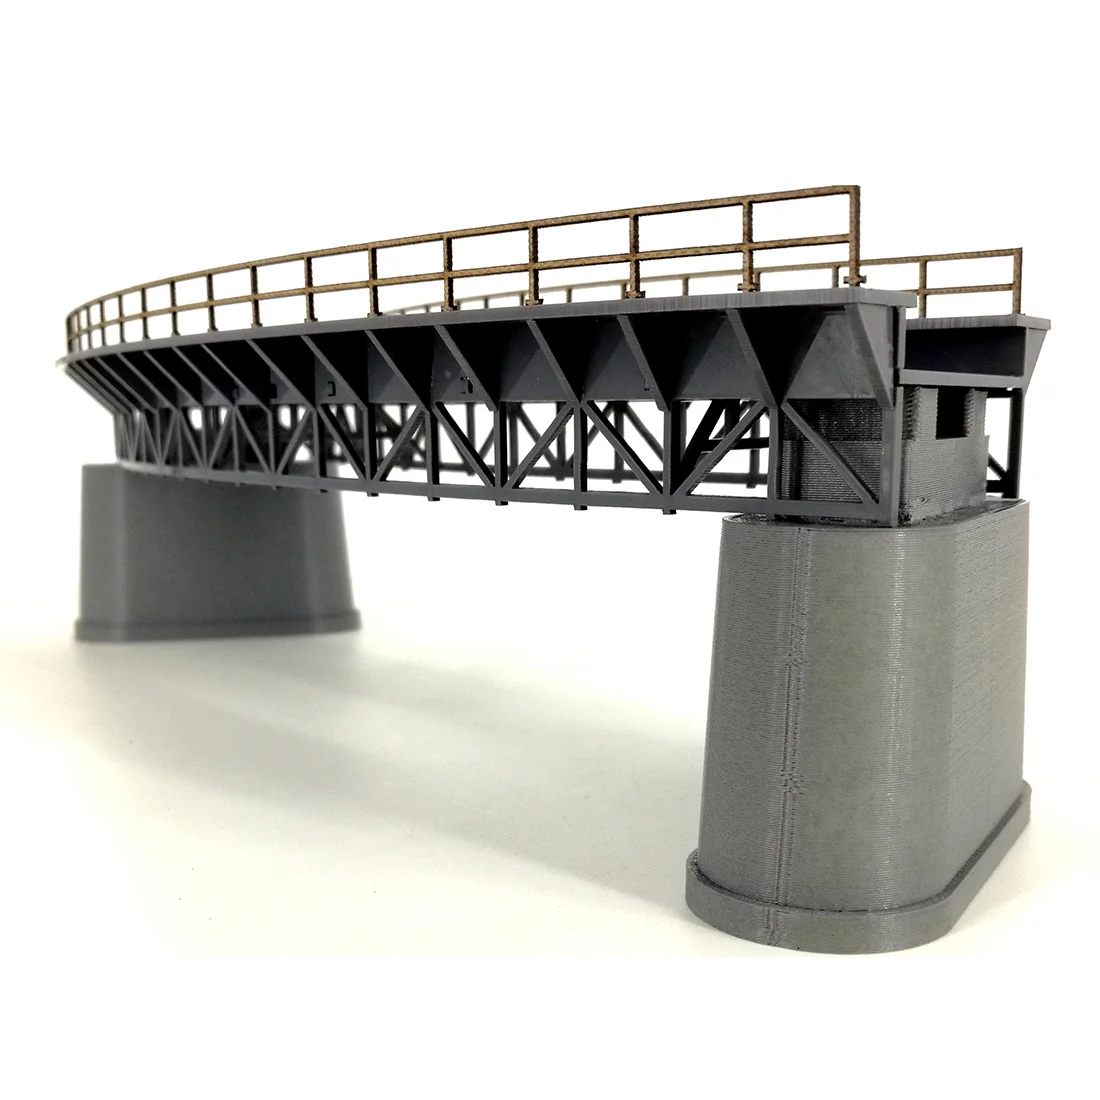 NFSTRIKE 1:87 HO Skala Tog Railway Scene, Dekoration Q4 R1 Buede Railway Bridge Model Uden Molen For Sand Tabel Tilbehør